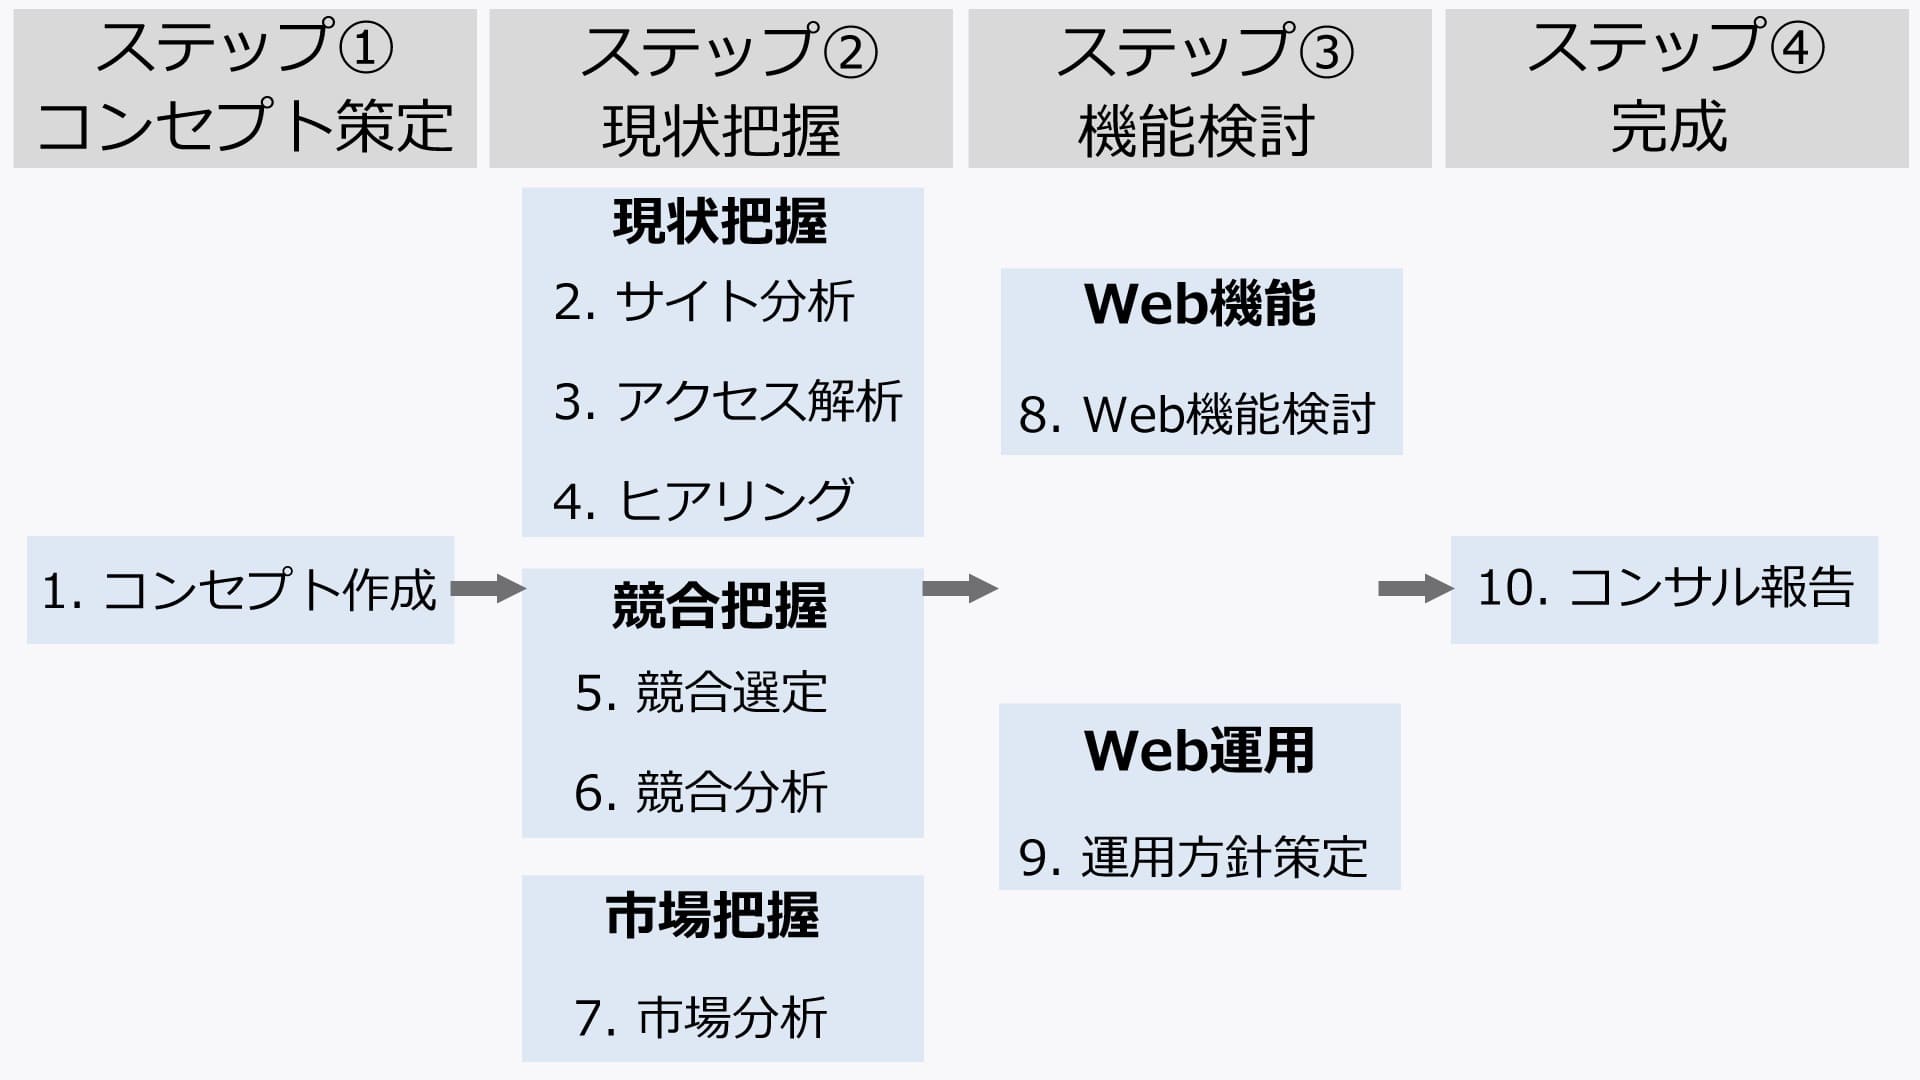 基本的なWebコンサルティングの流れ | サイト改善の場合